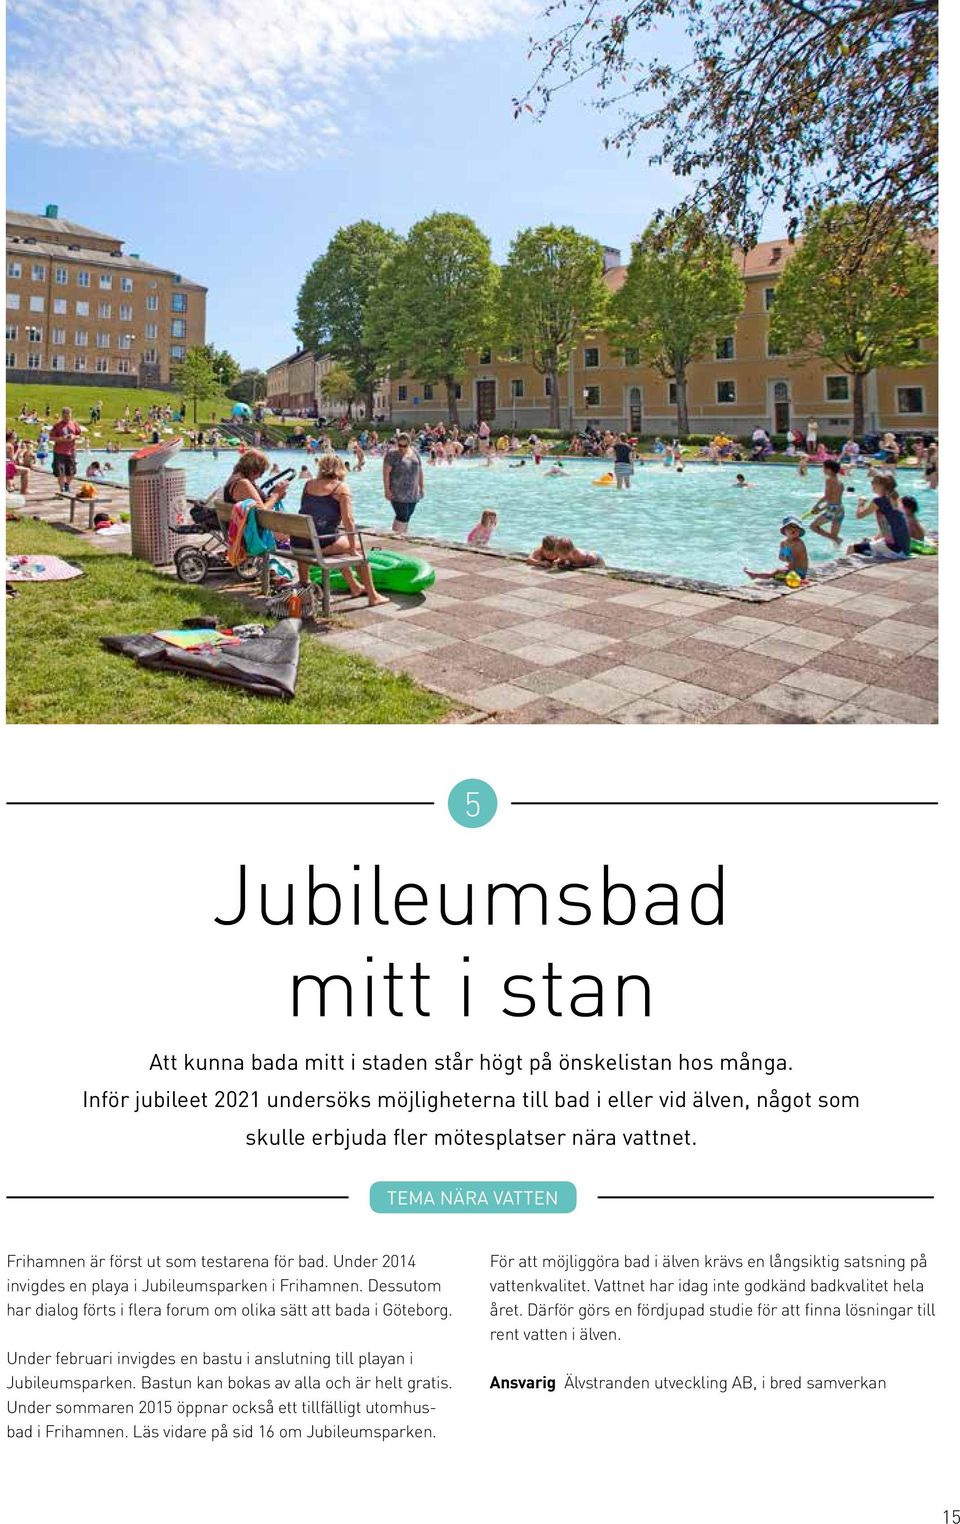 Under 2014 invigdes en playa i Jubileumsparken i Frihamnen. Dessutom har dialog förts i flera forum om olika sätt att bada i Göteborg.